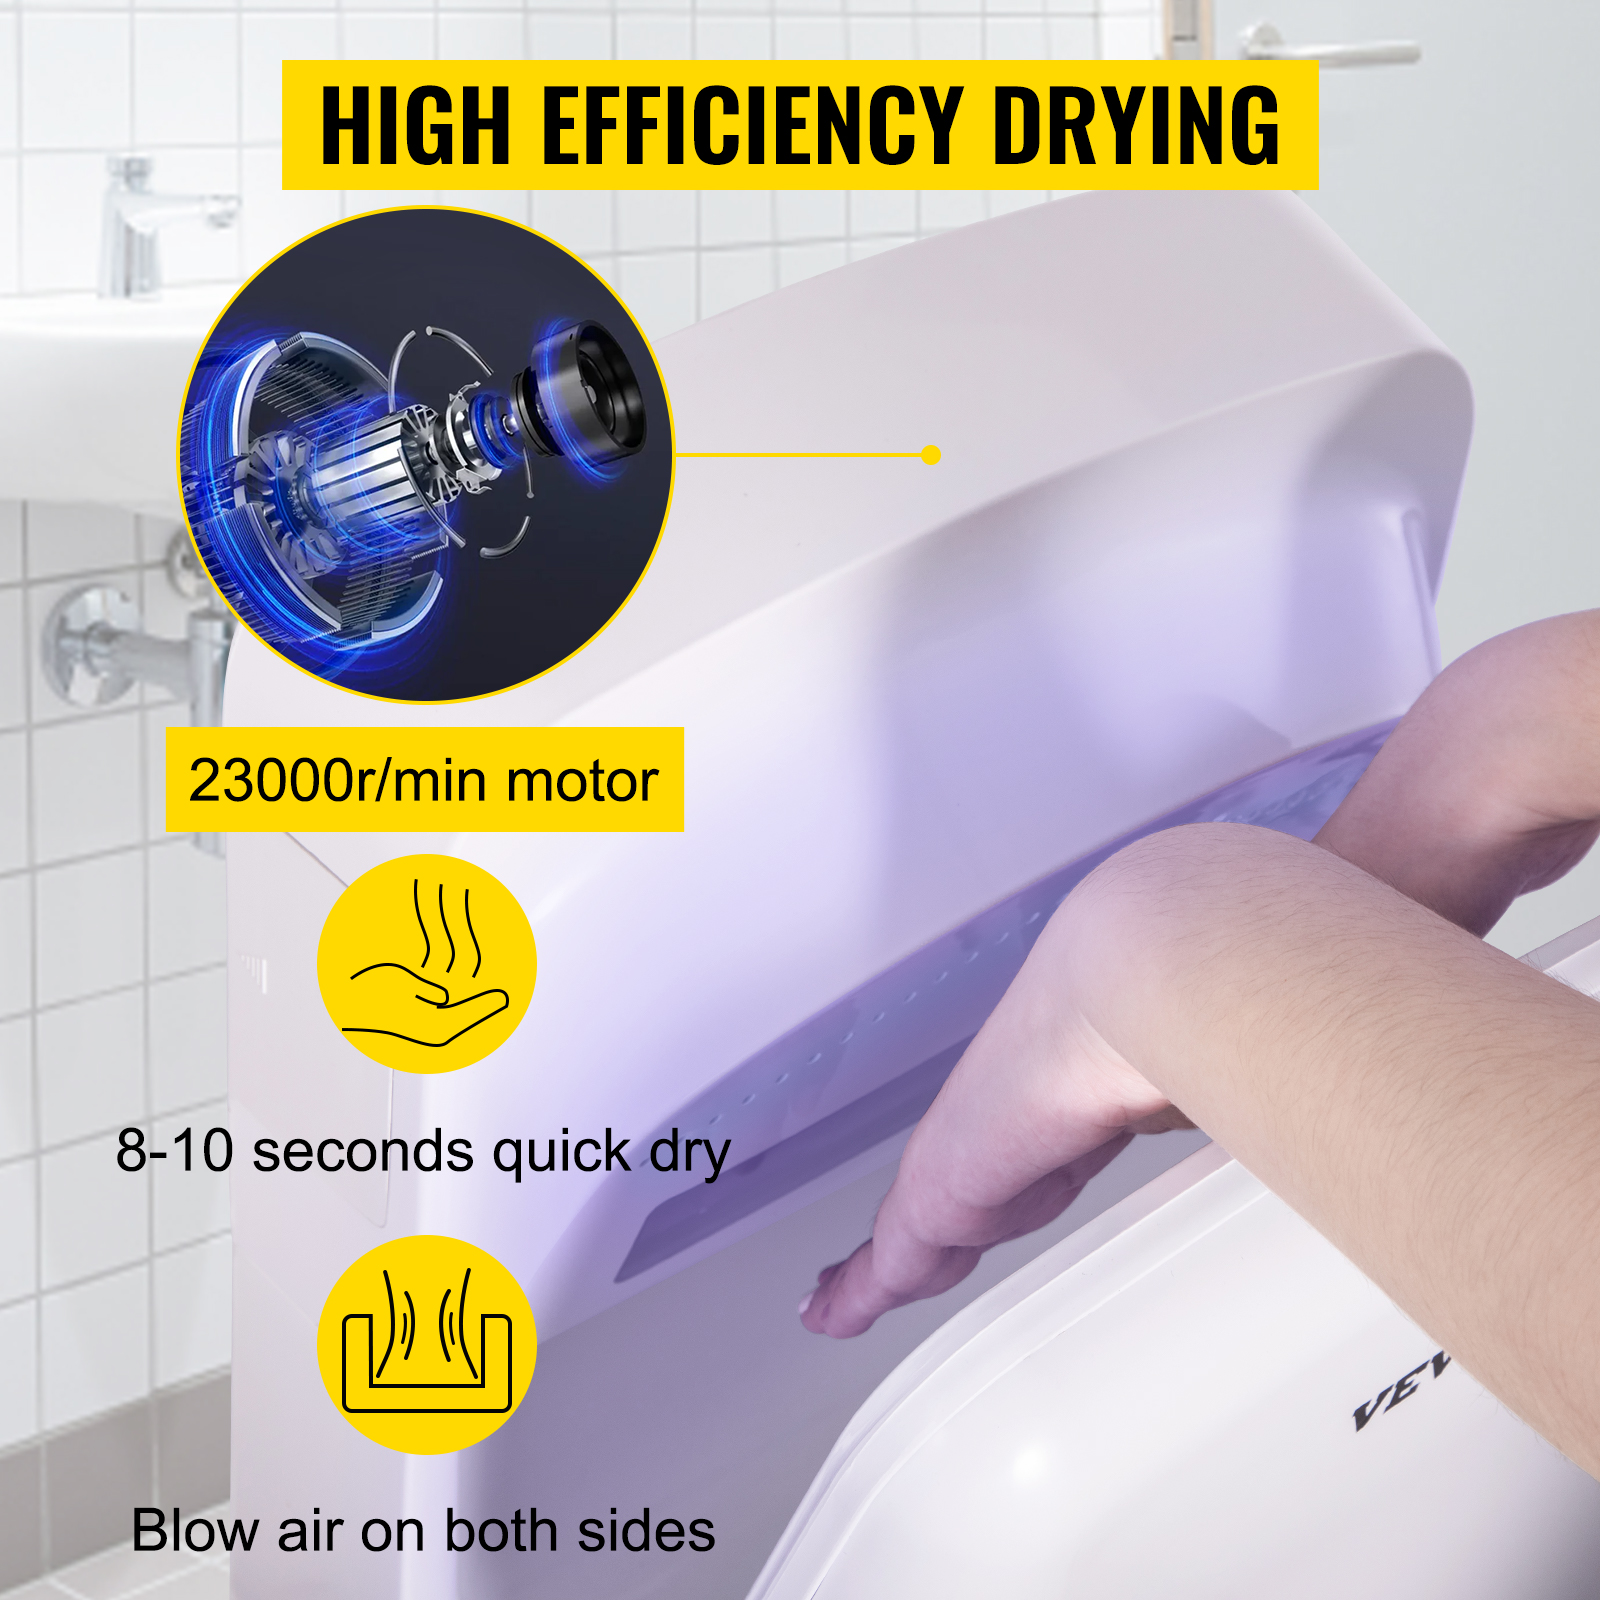 Jet Hand Dryer,White,High-Speed